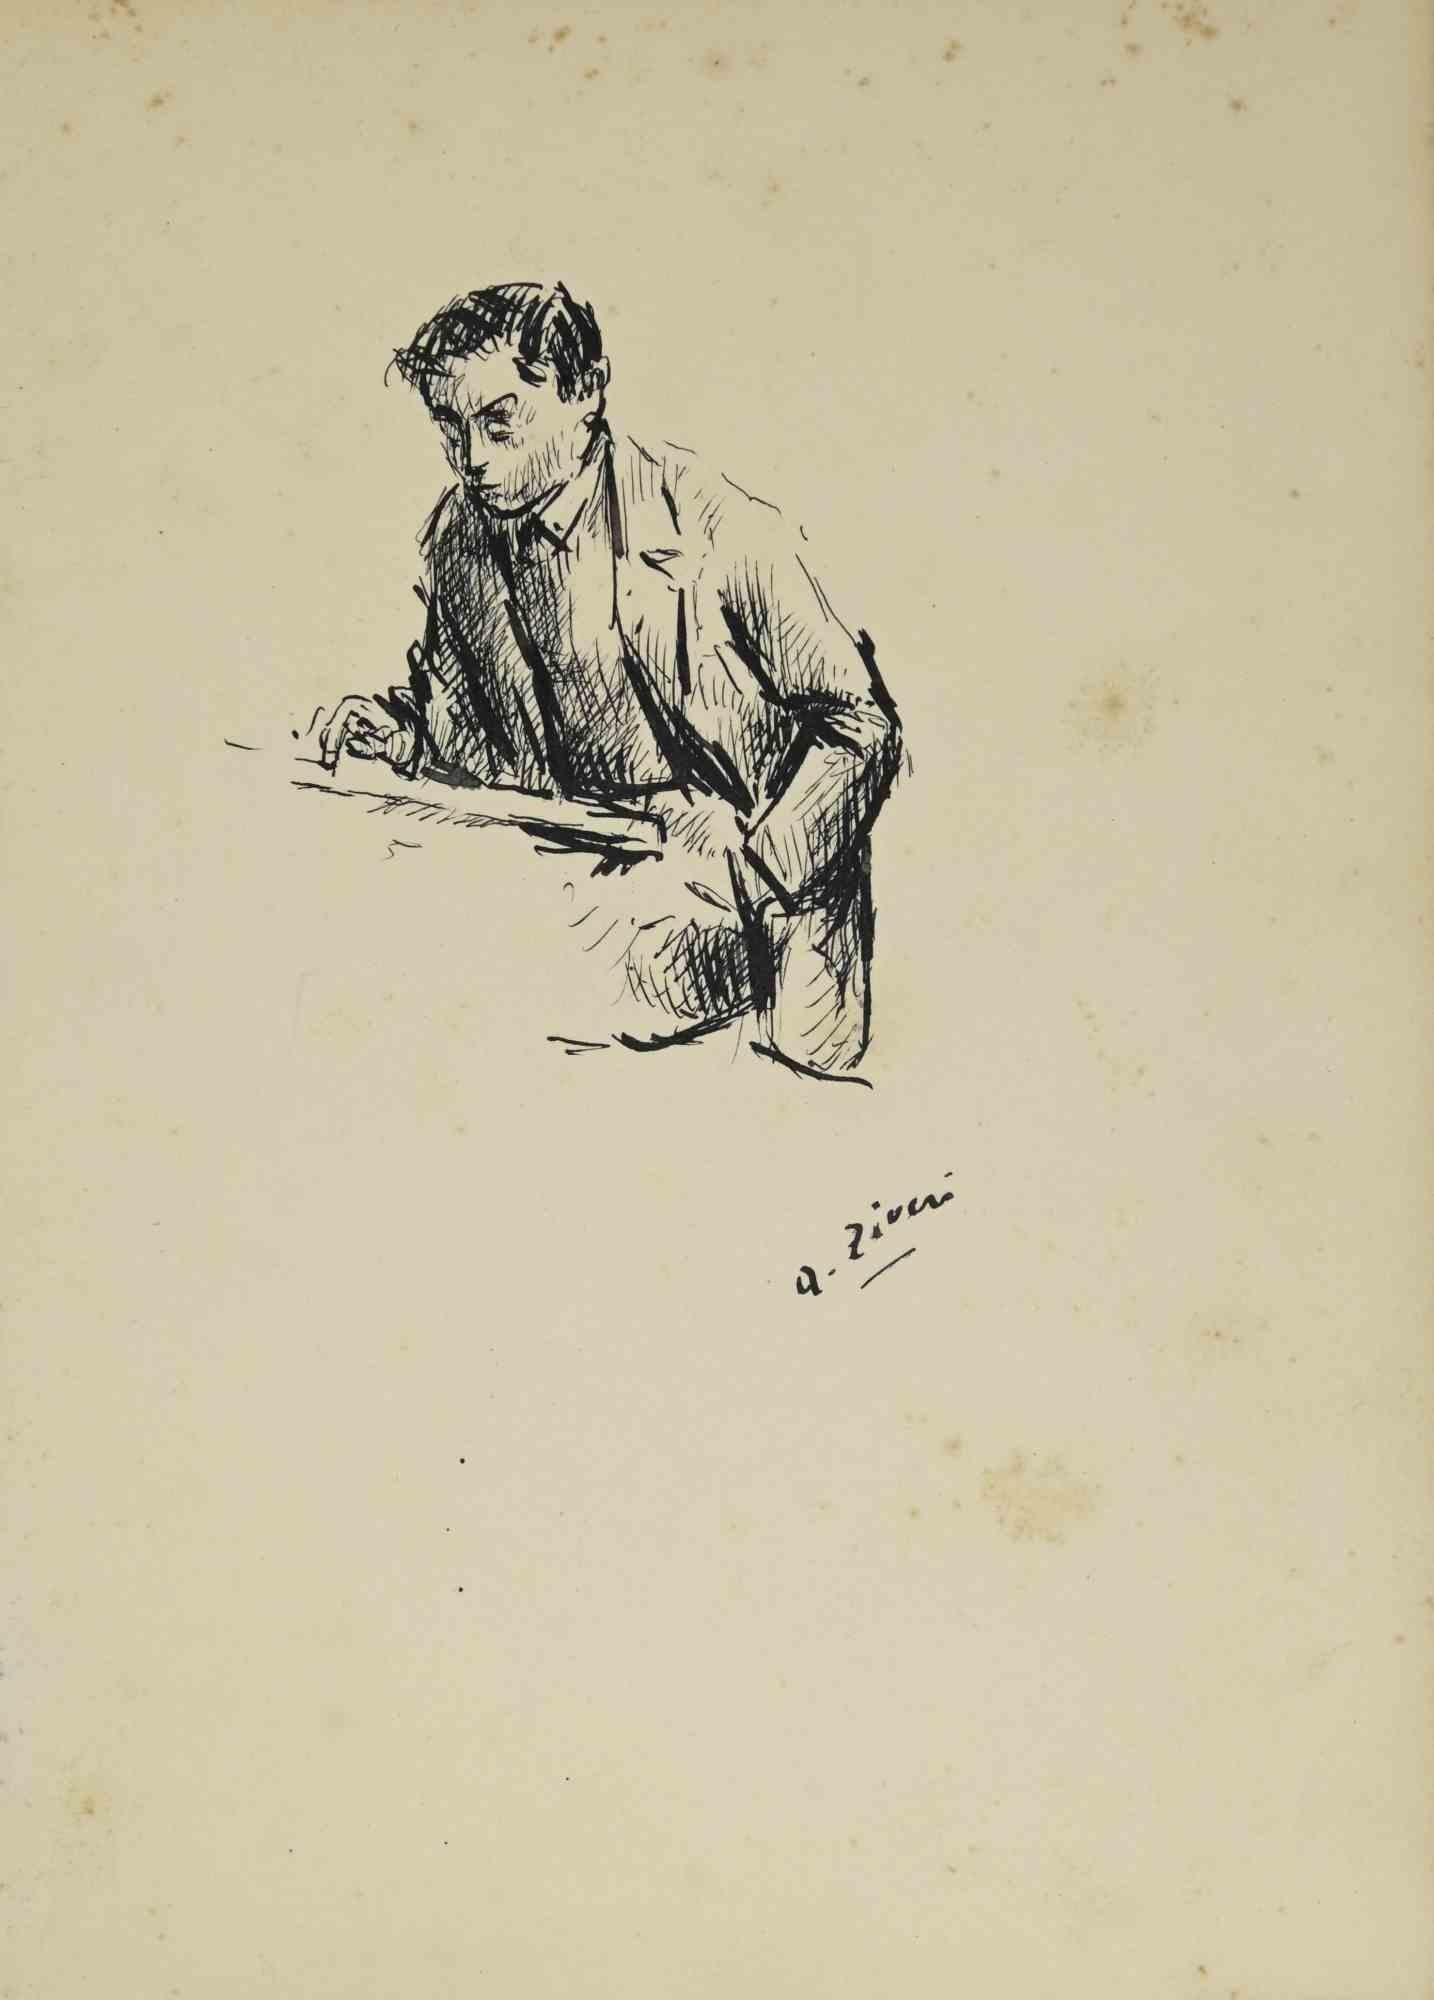 Writing Man ist eine Originalzeichnung von Alberto Ziveri aus den 1930er Jahren.

Tinte auf Papier.

Handsigniert.

In gutem Zustand mit leichten Stockflecken.

Das Kunstwerk wird durch geschickte Striche meisterhaft dargestellt.

Alberto Ziveri